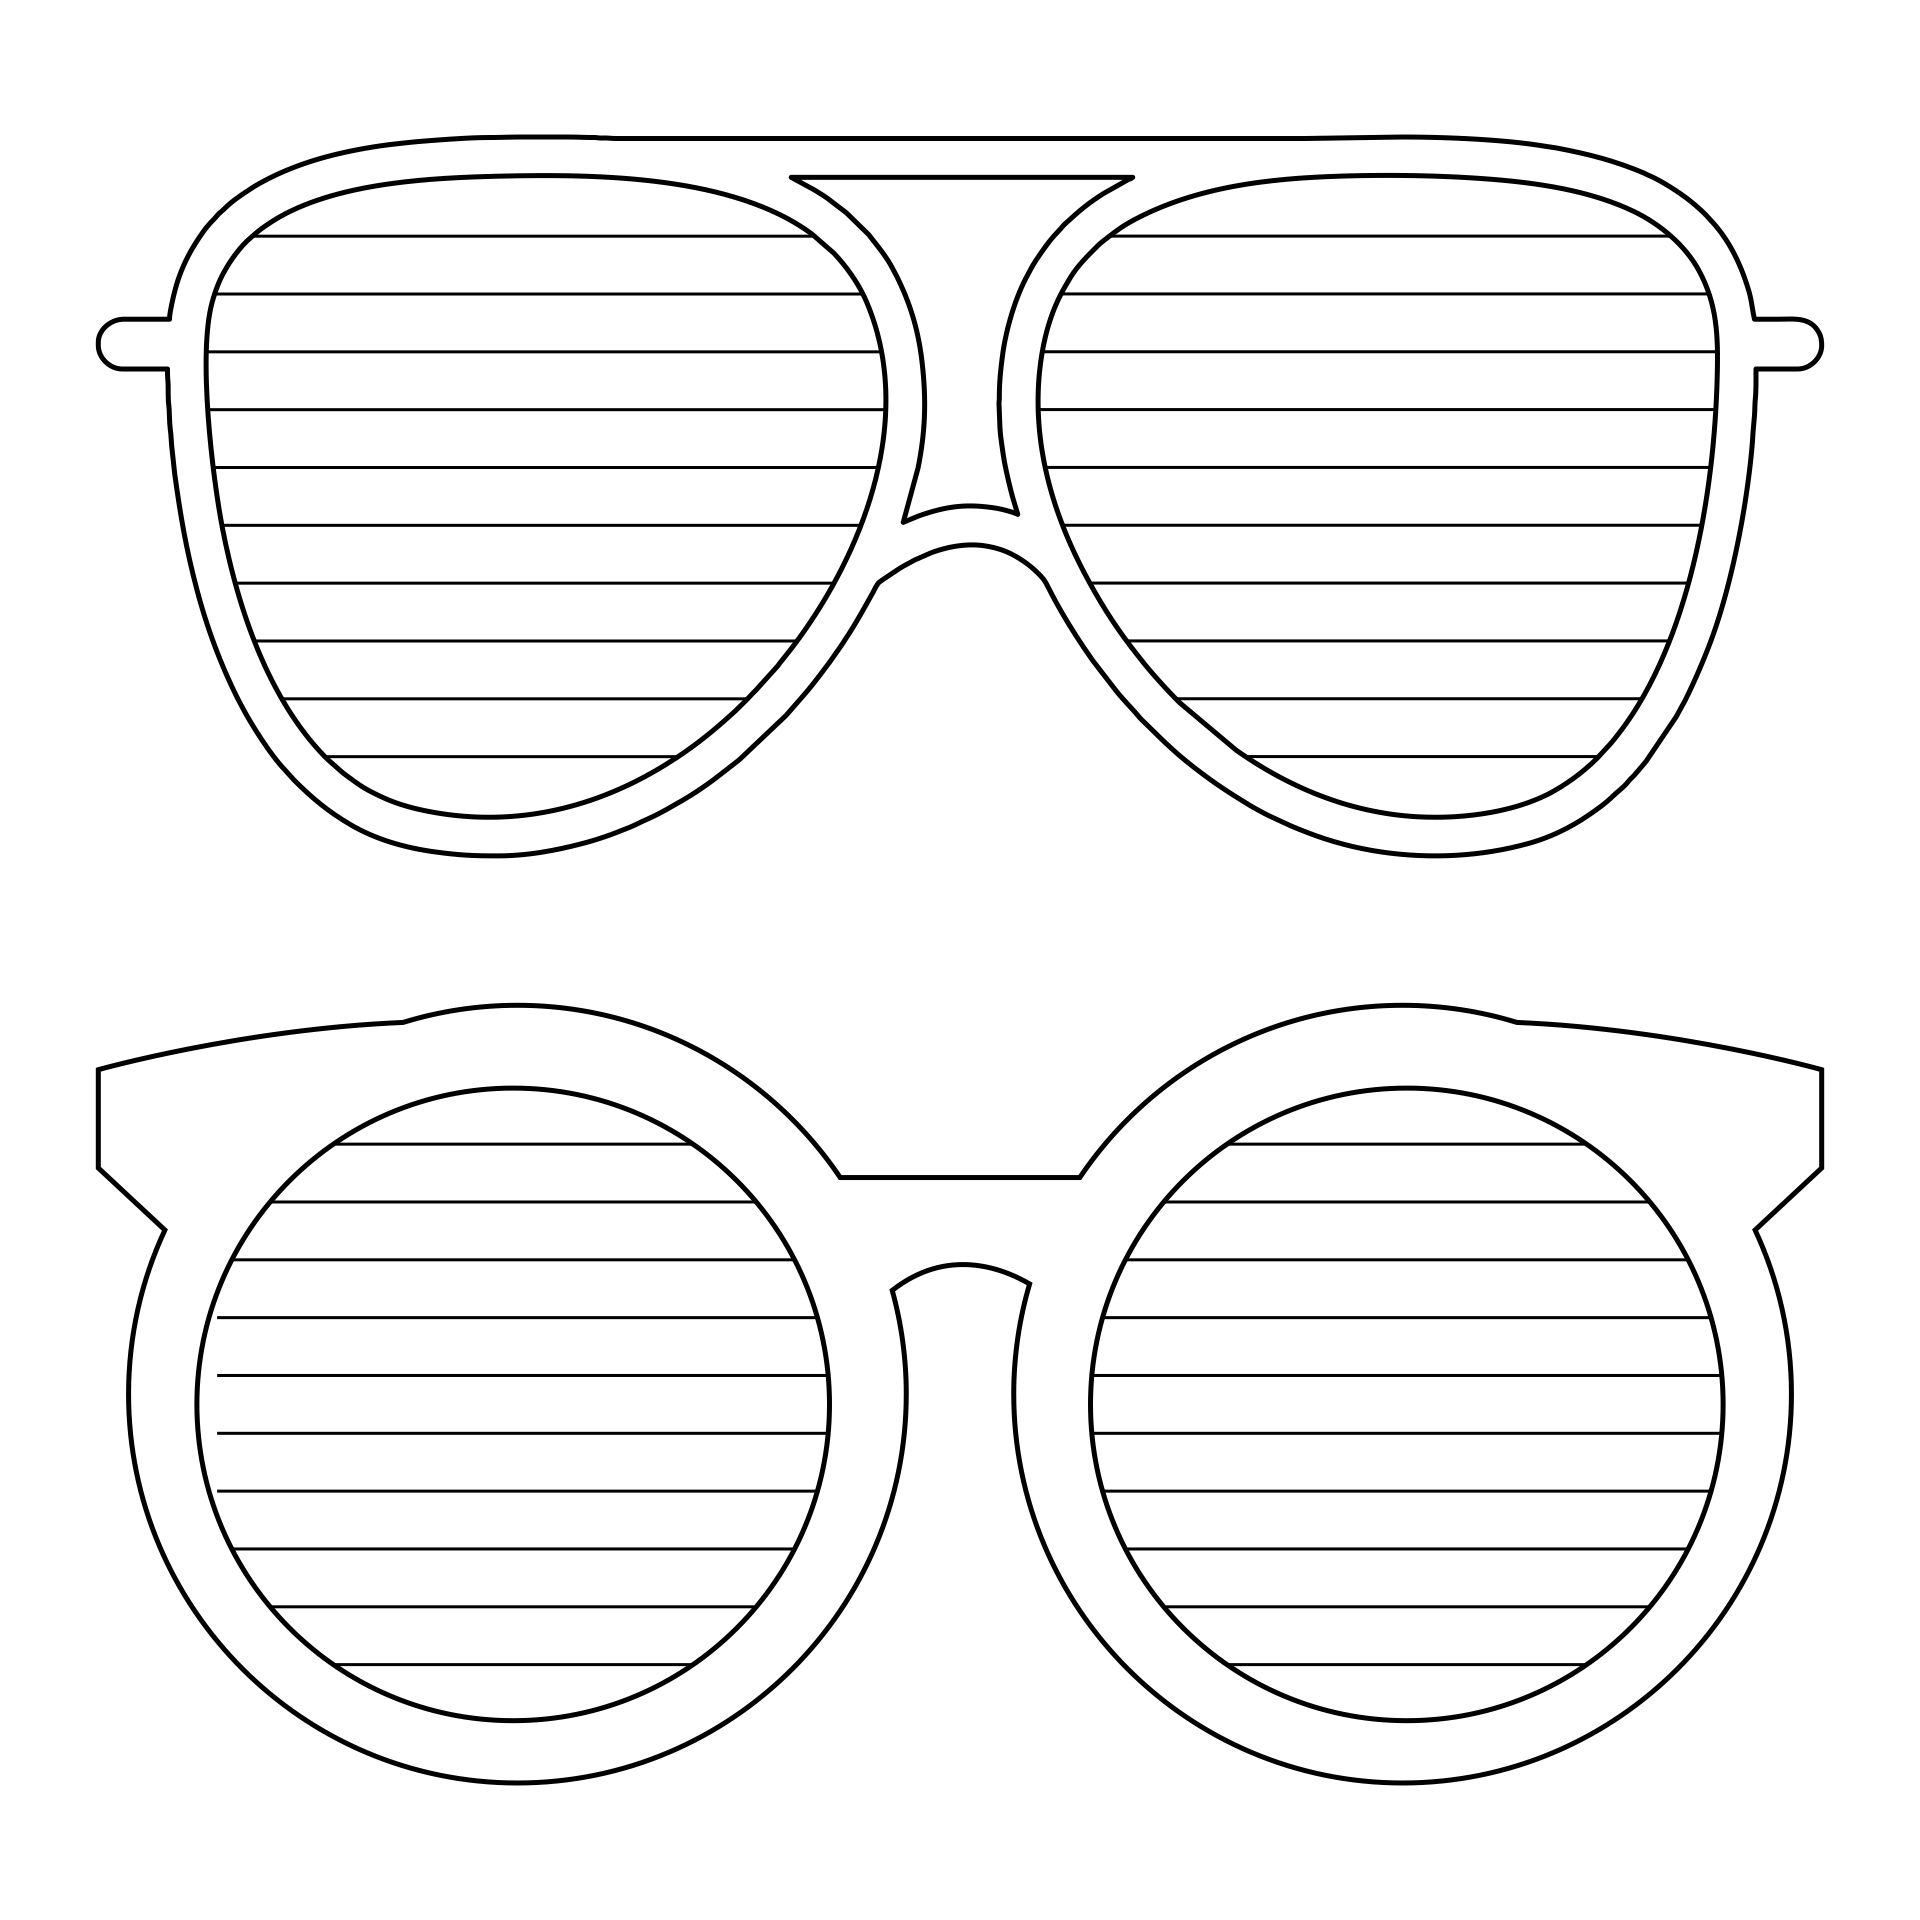 3Д очки / 3D Glasses из бумаги